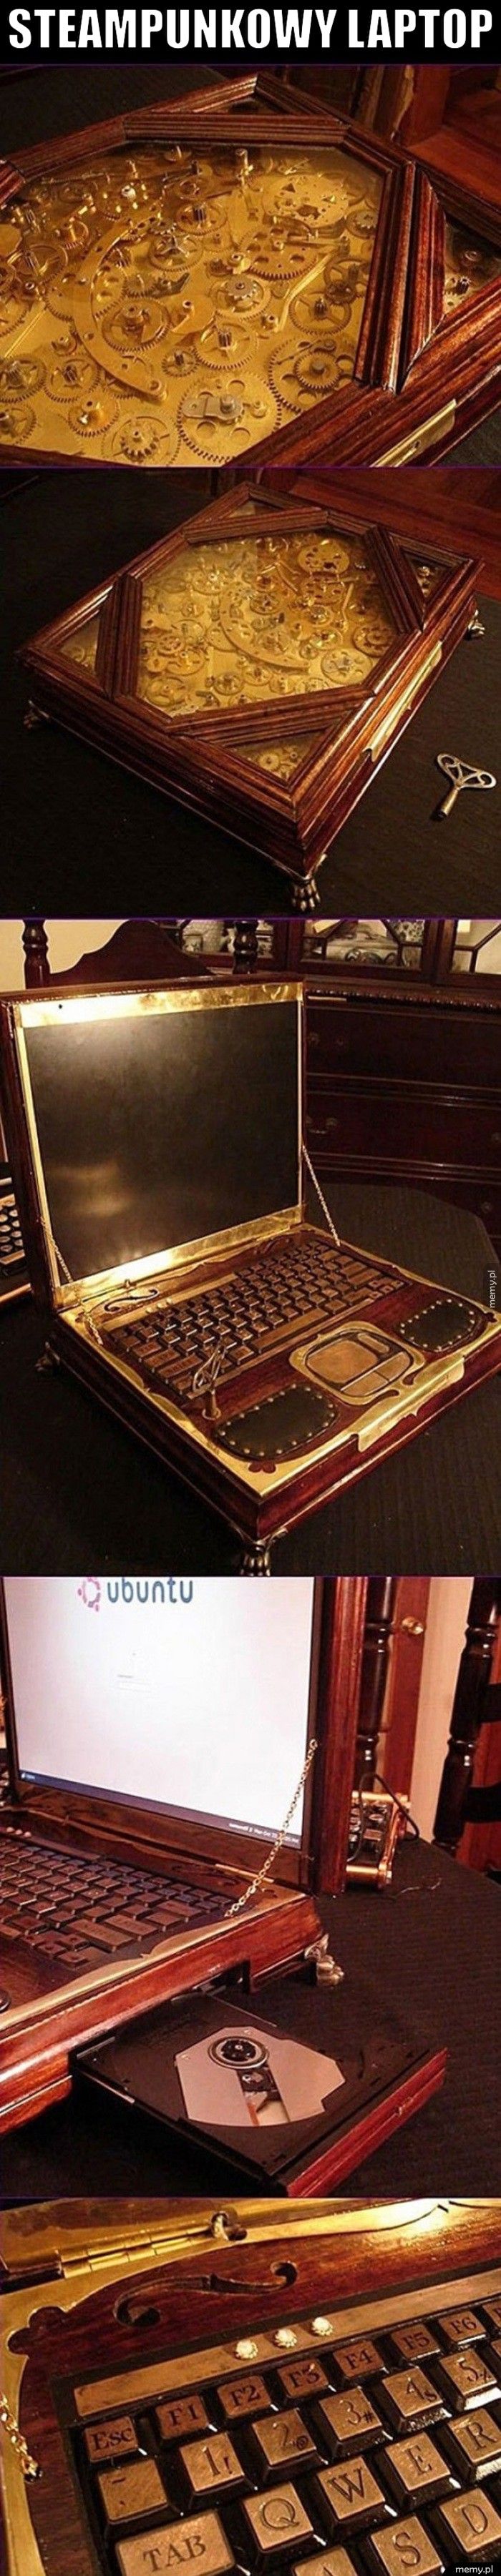 Steampunkowy laptop 